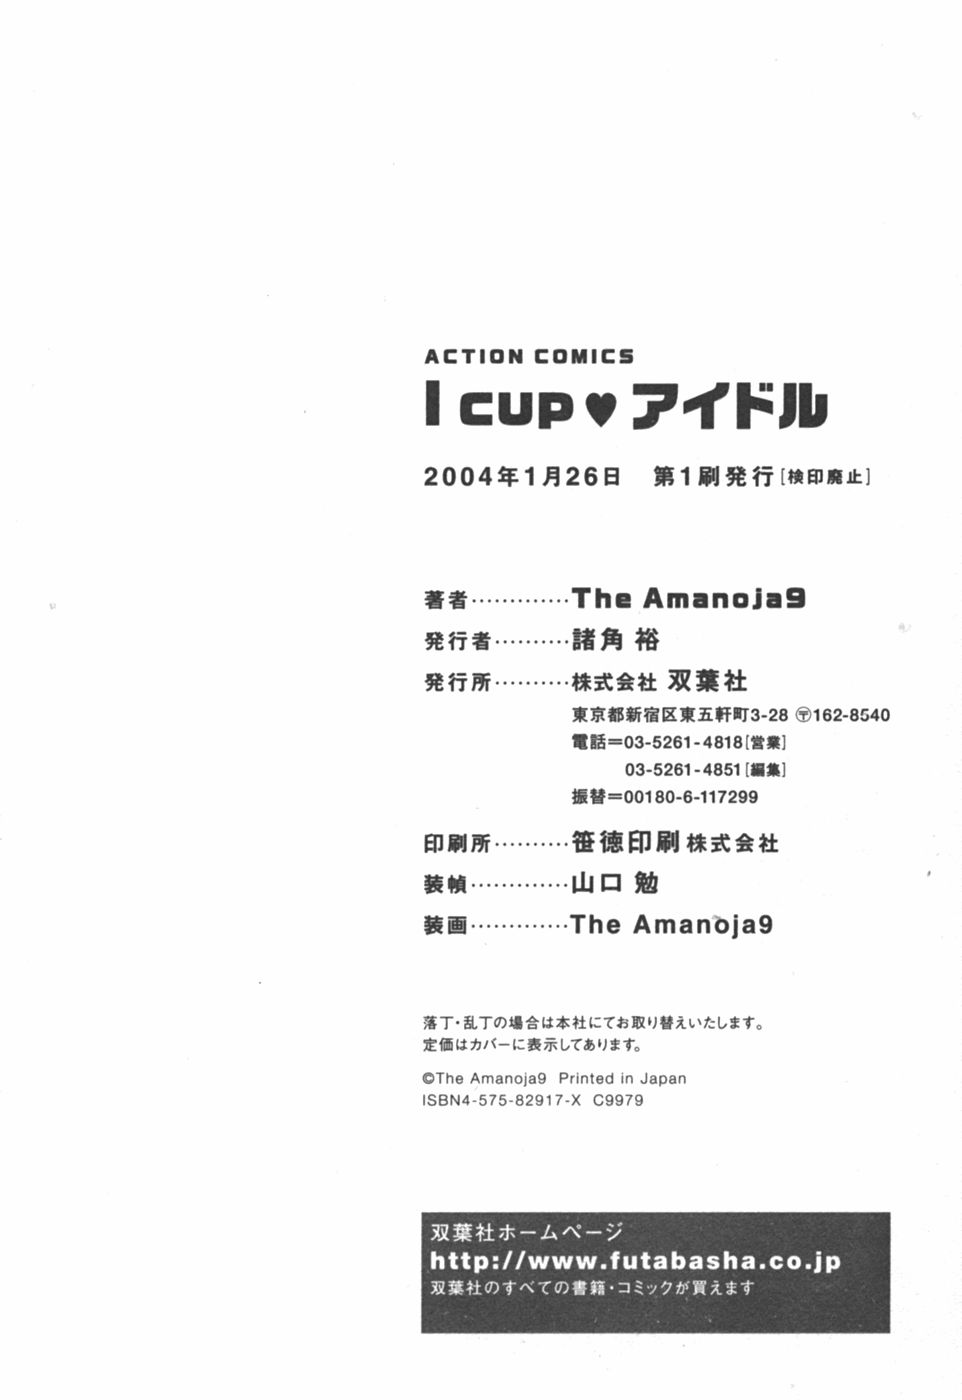 [The Amanoja9] I cupアイドル